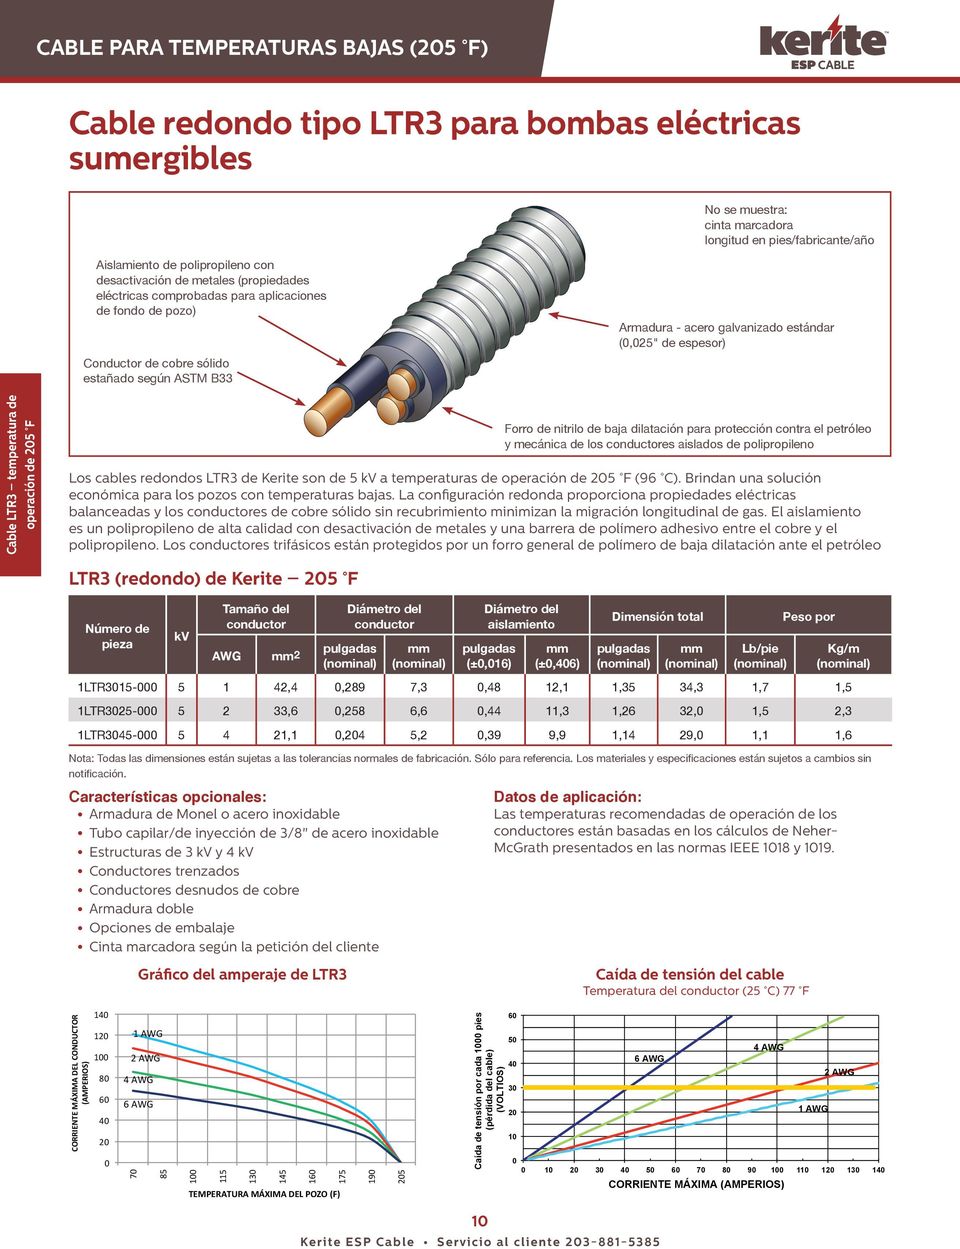 espesor) Cable LTR3 temperatura de operación de 25 F Forro de nitrilo de baja dilatación para protección contra el petróleo y mecánica de los es aislados de polipropileno Los cables redondos LTR3 de